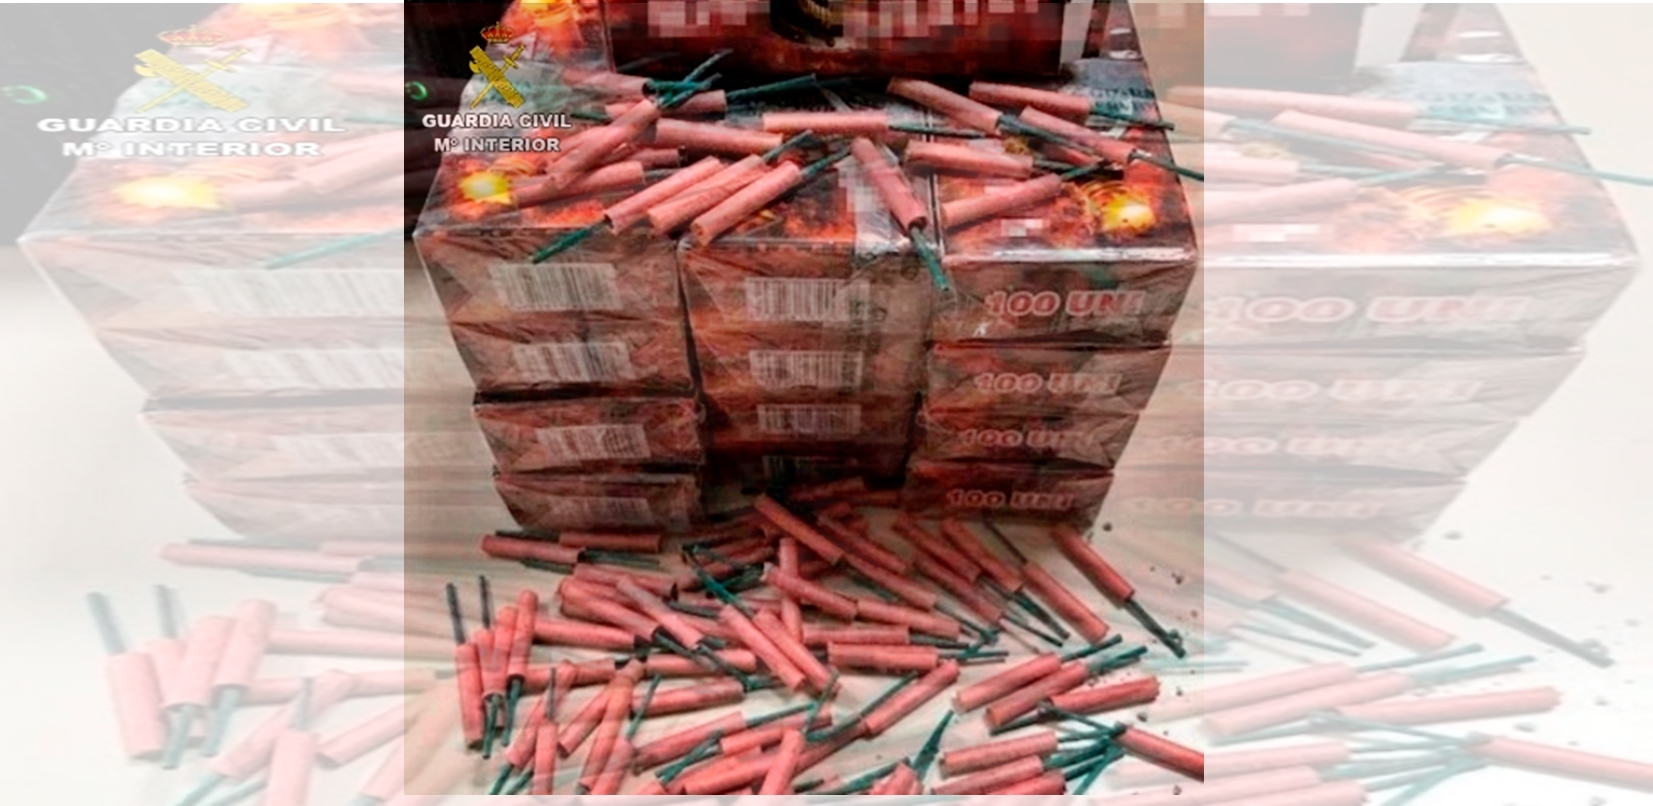 La Guardia Civil interviene más de 500.000 artificios pirotécnicos durante la Navidad